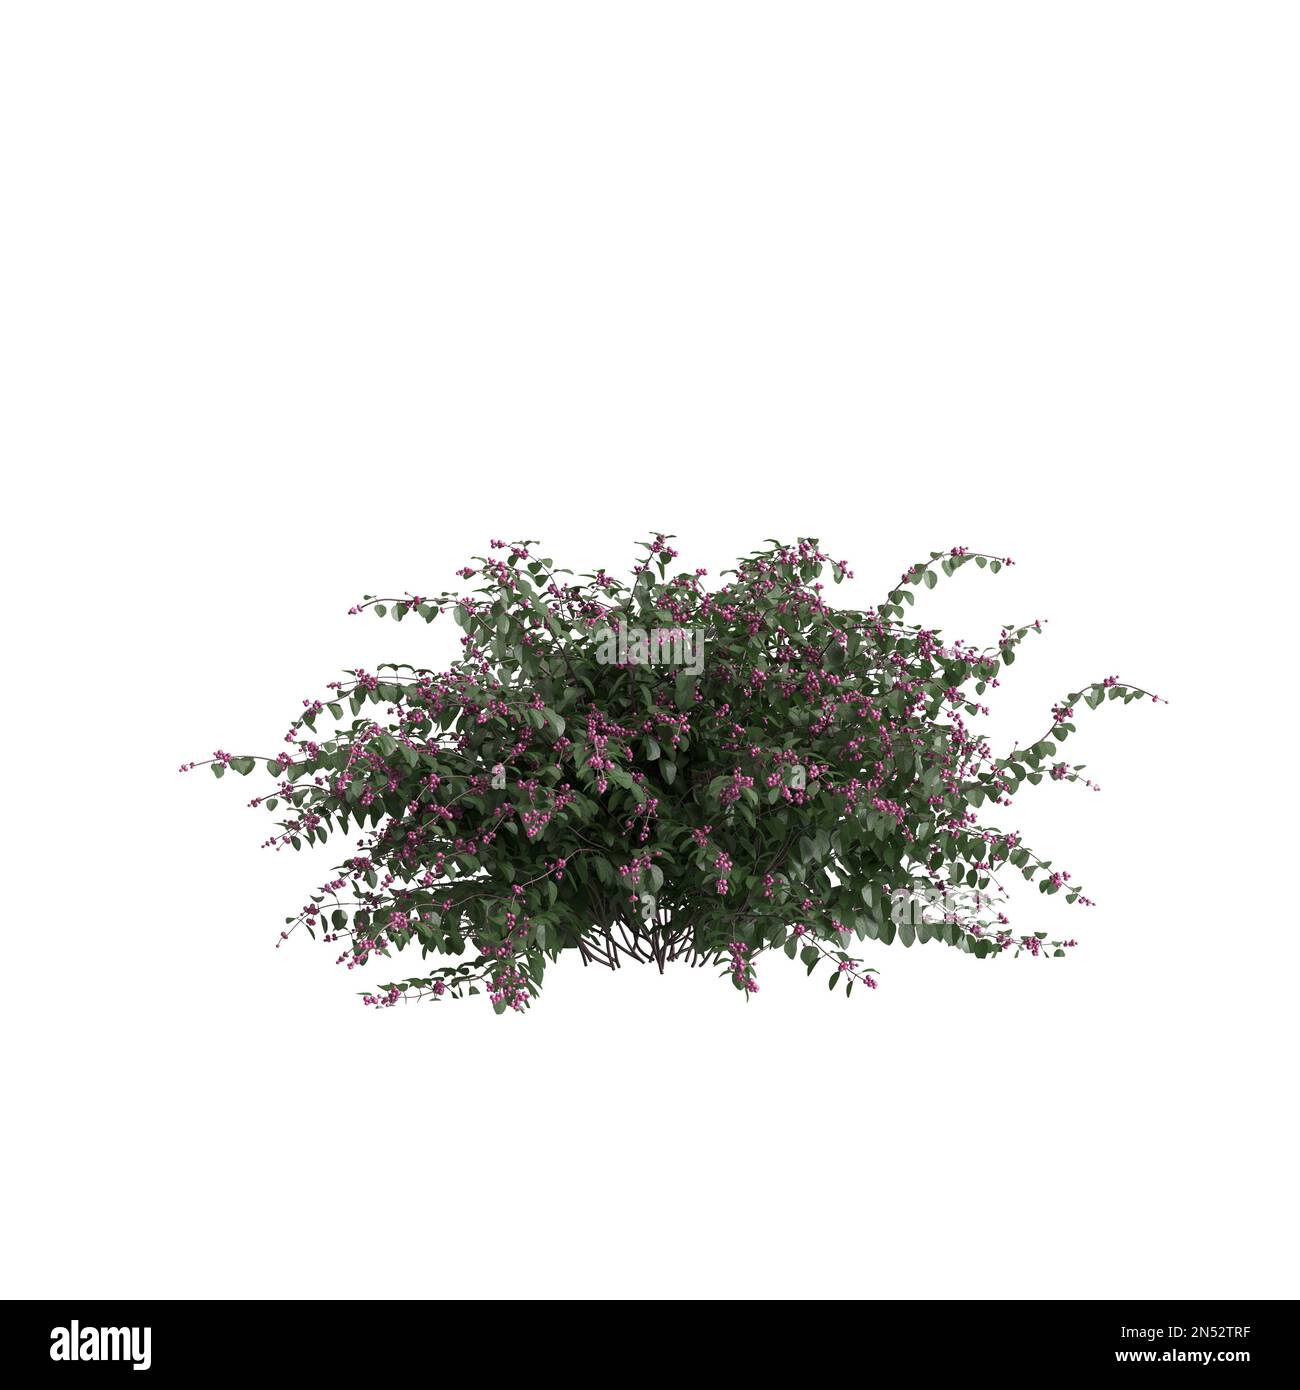 3d illustration of symphoricarpos doorenbosii bush isolated on white background Stock Photo